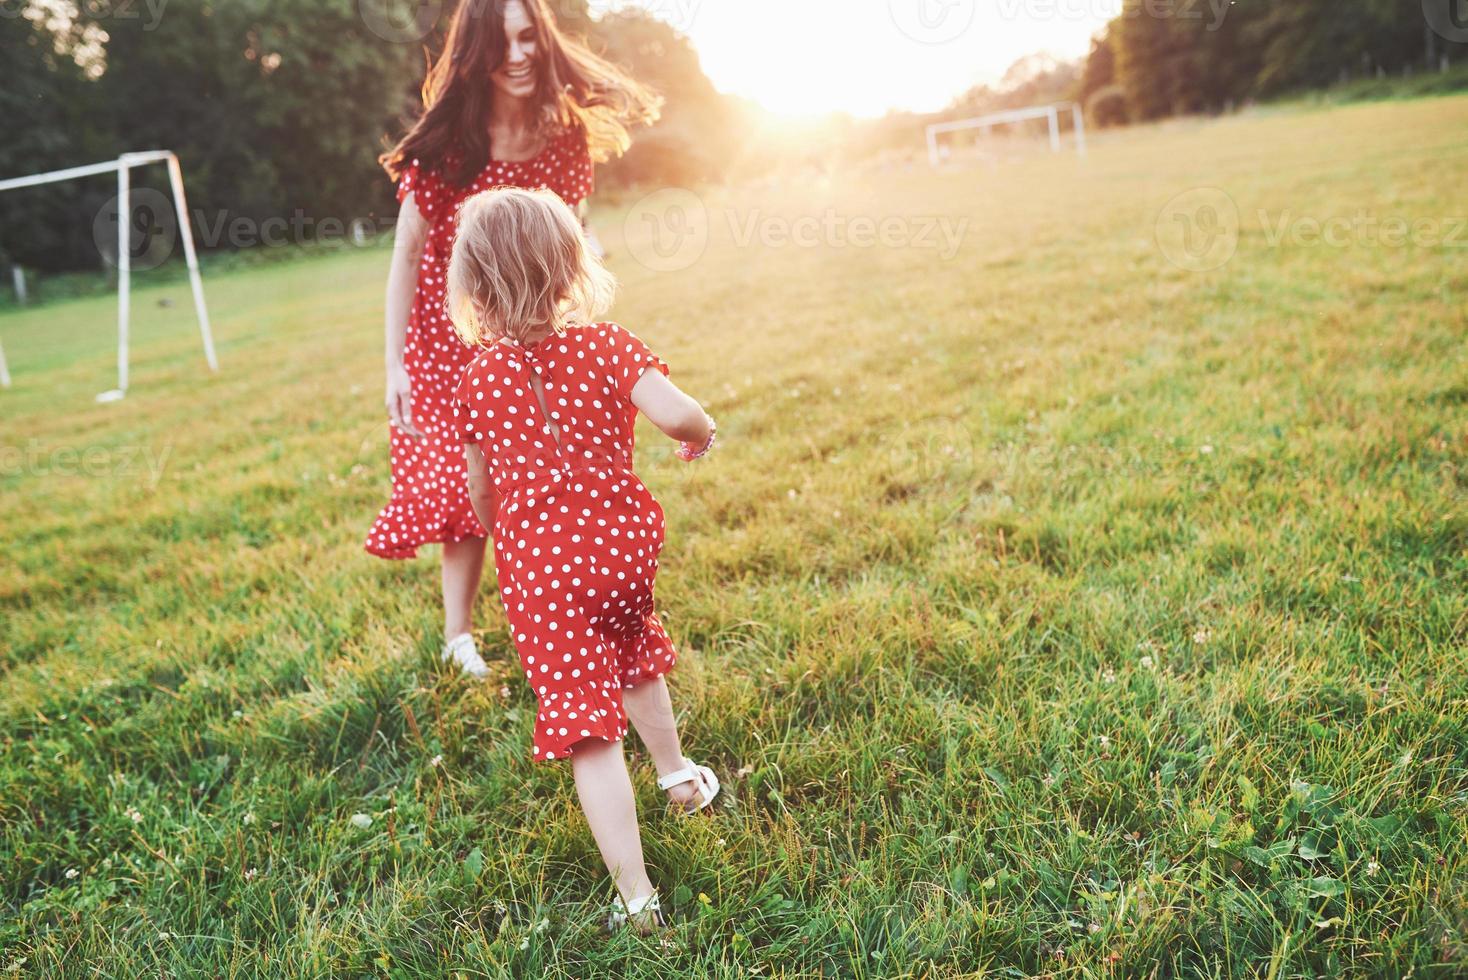 correr y divertirse. joven madre con su hija pasando tiempo afuera en un lugar tan hermoso foto